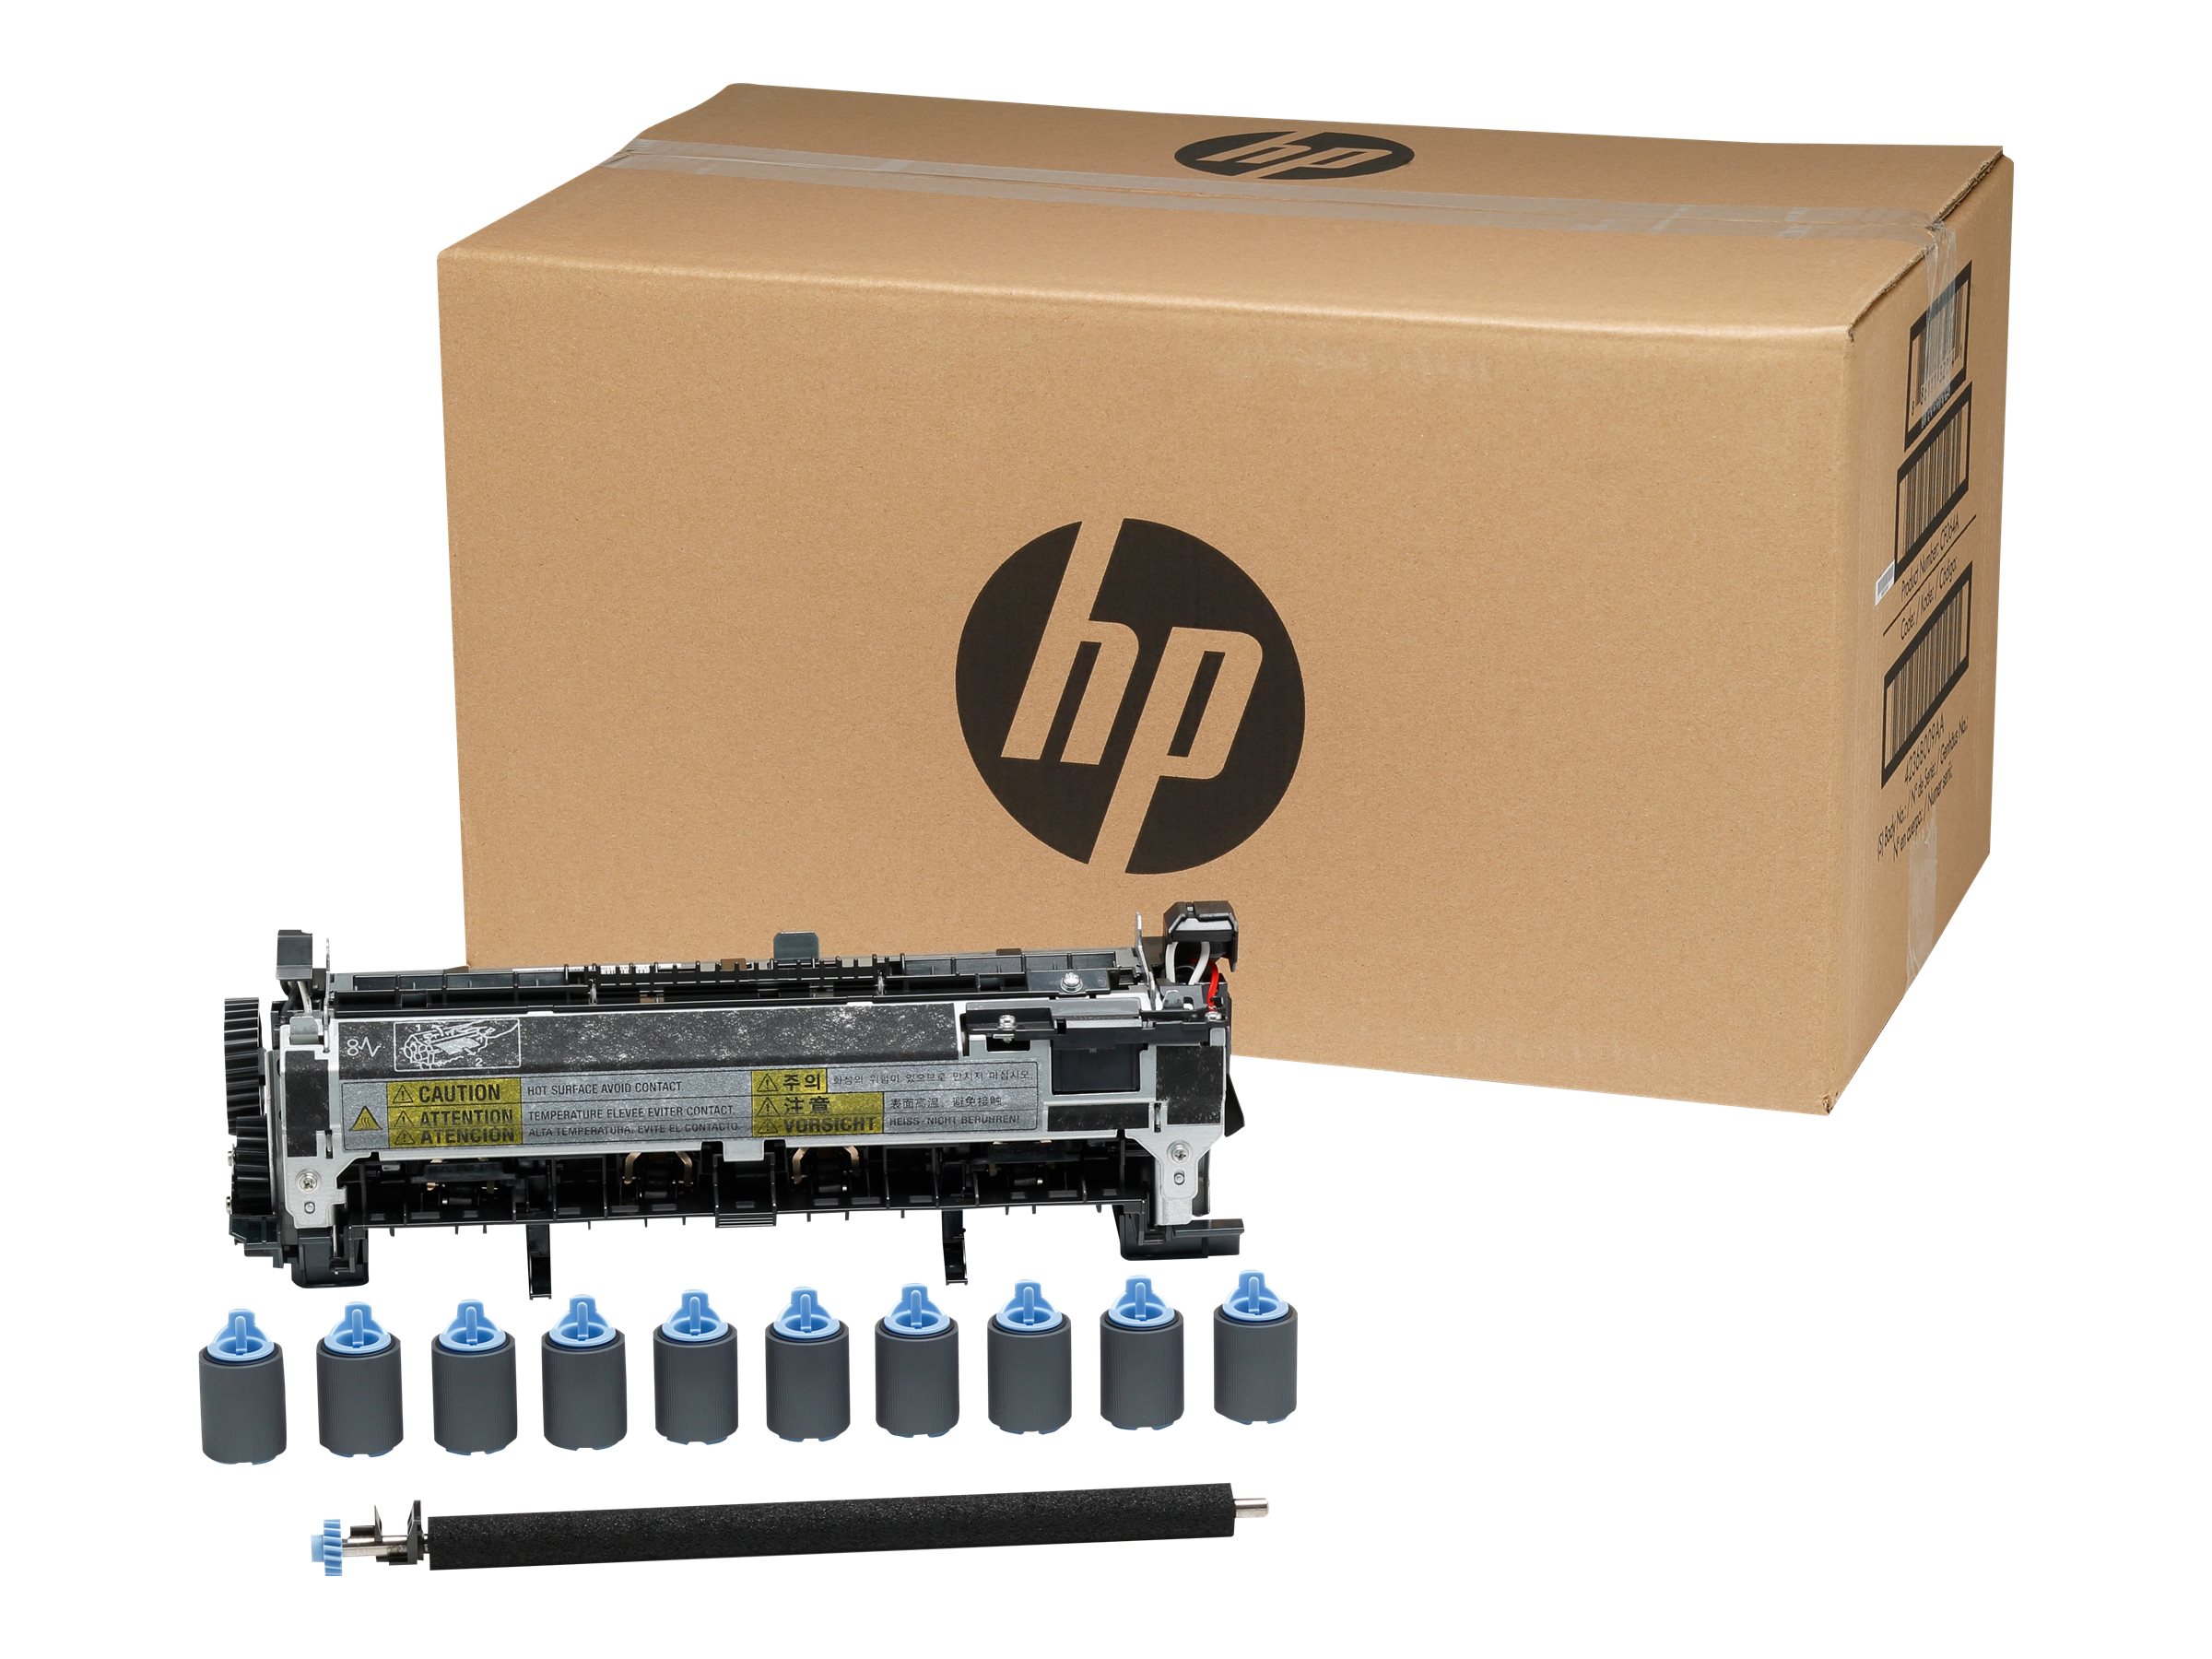 HP - Wartungskit - für LaserJet Enterprise 600 M601, 600 M602, 600 M603